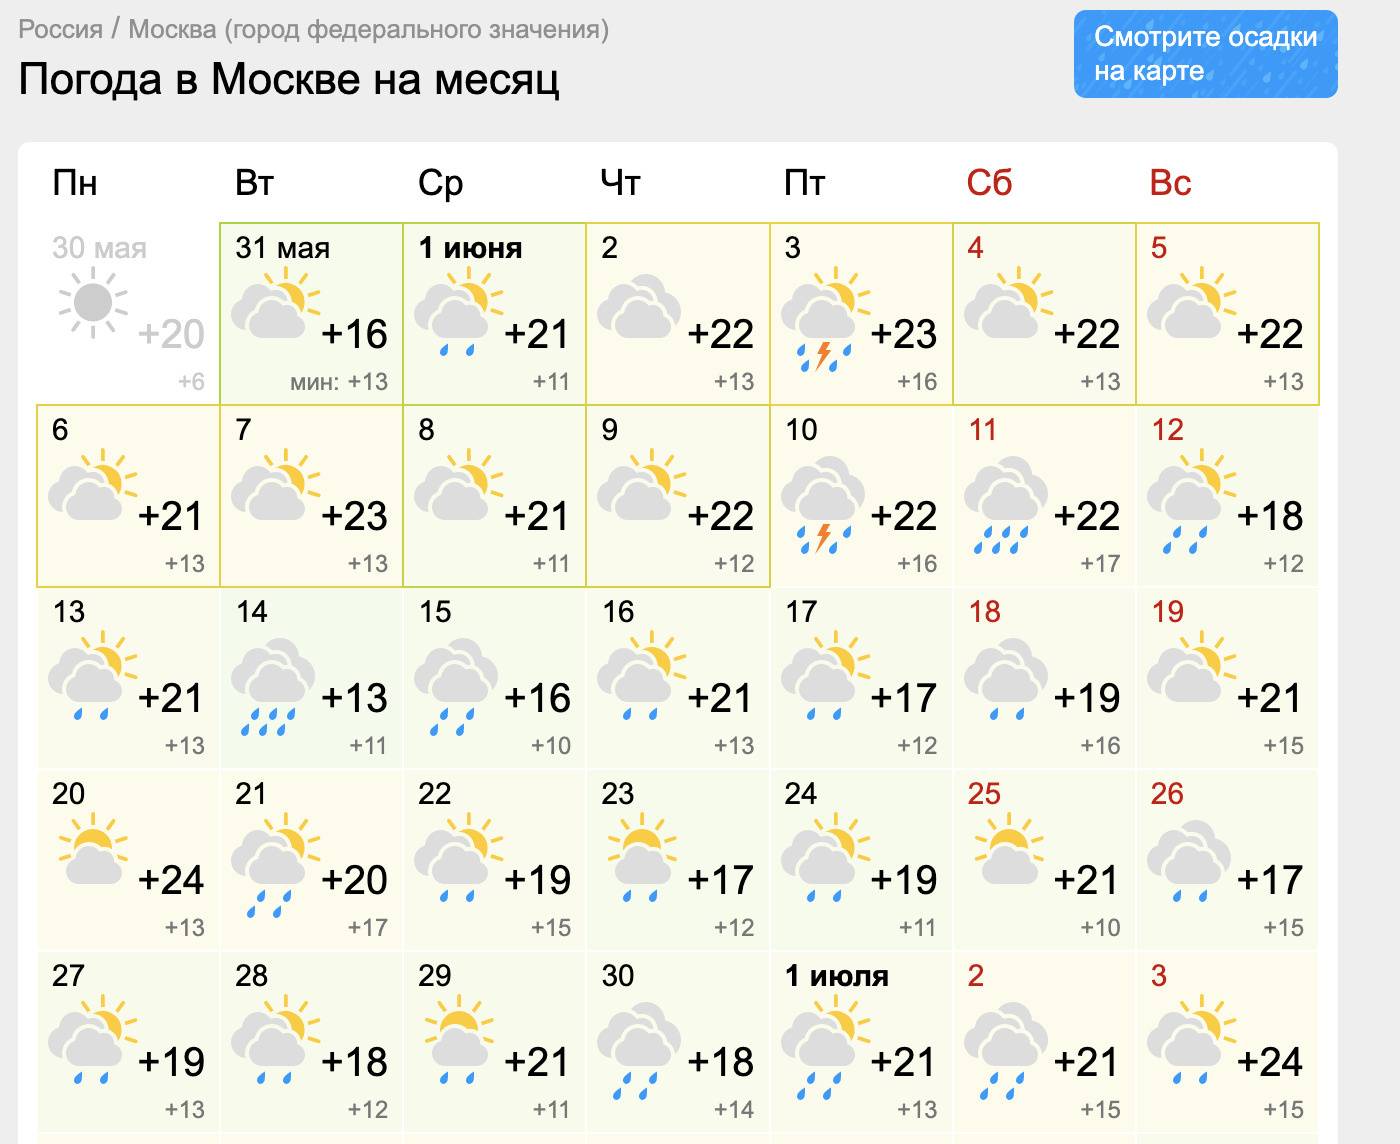 Температура в москве сейчас. Погода в Москве.